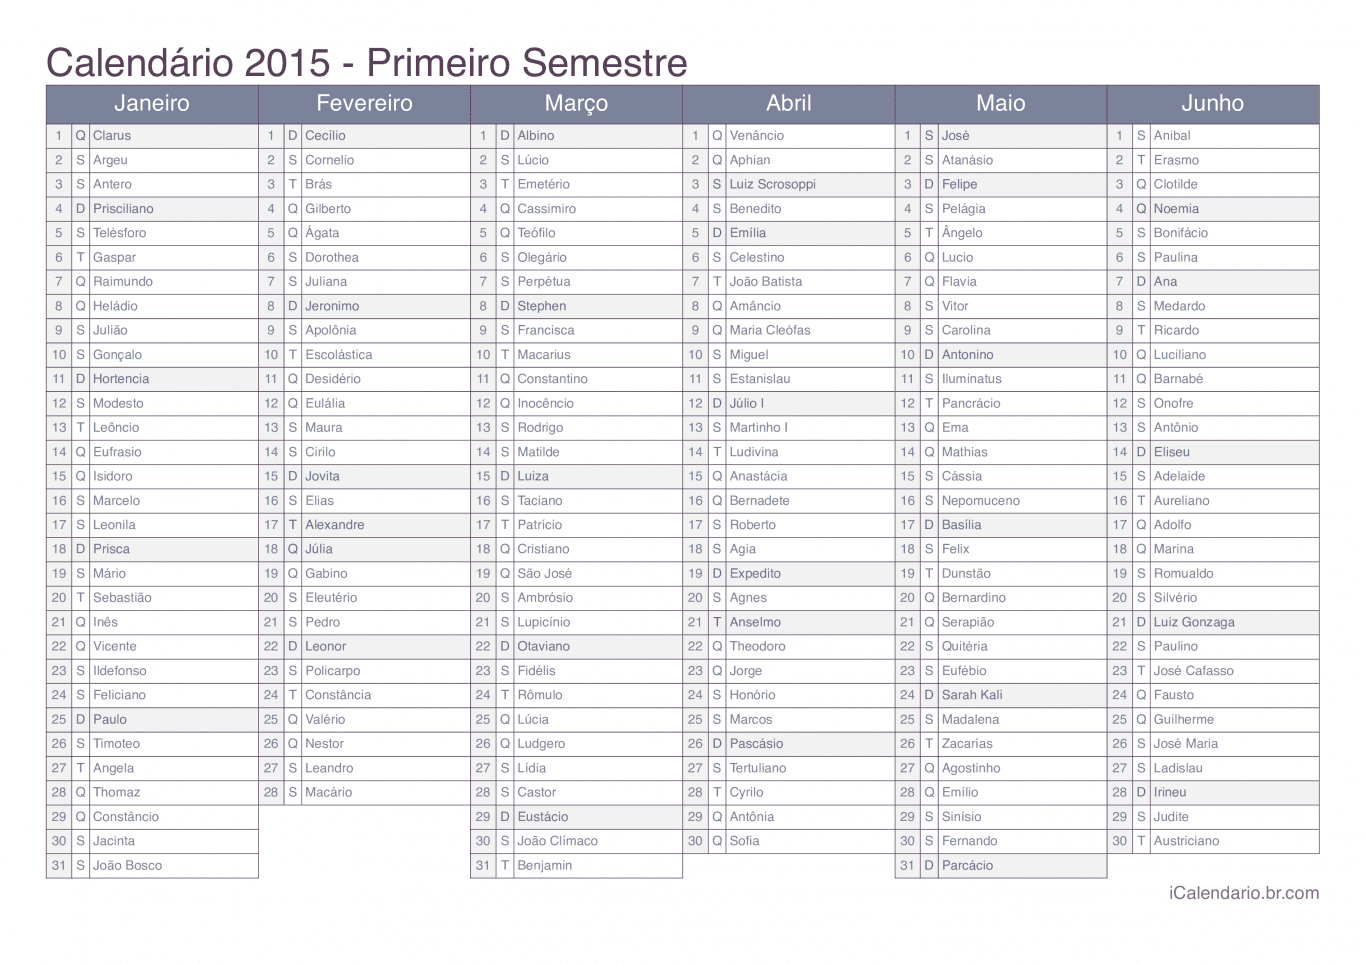 Calendário por semestre 2015 com festa do dia - Office